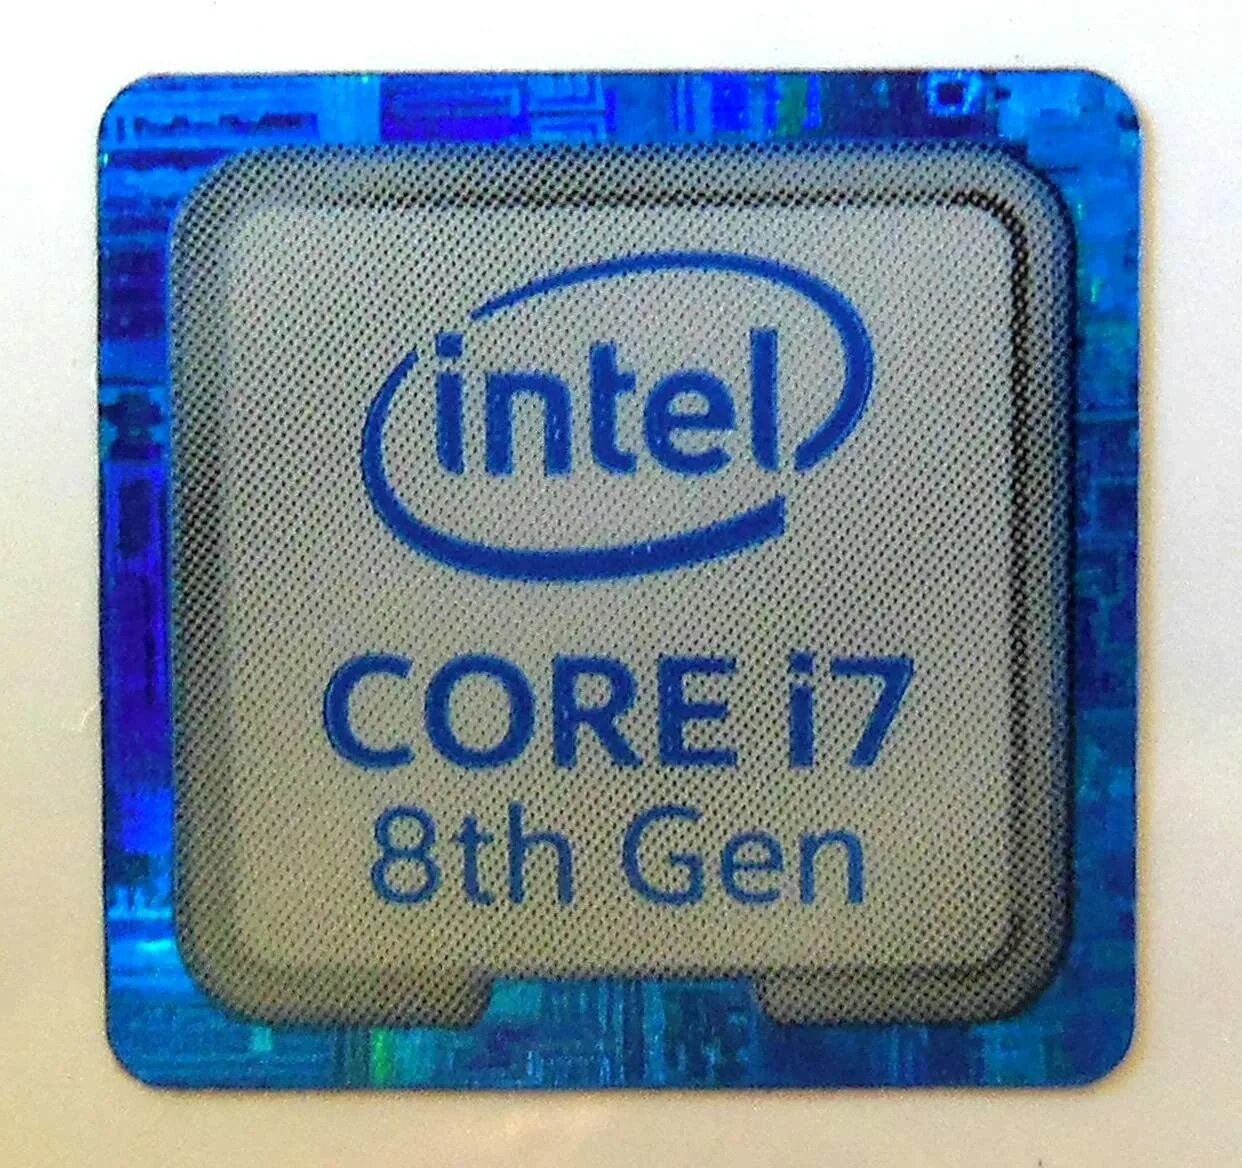 Intel core i7 частота. Intel Core i5 gen5. Intel Core i5 8 Gen. Intel Core 3th Gen. Процессор Intel Core i5 Gen 8.